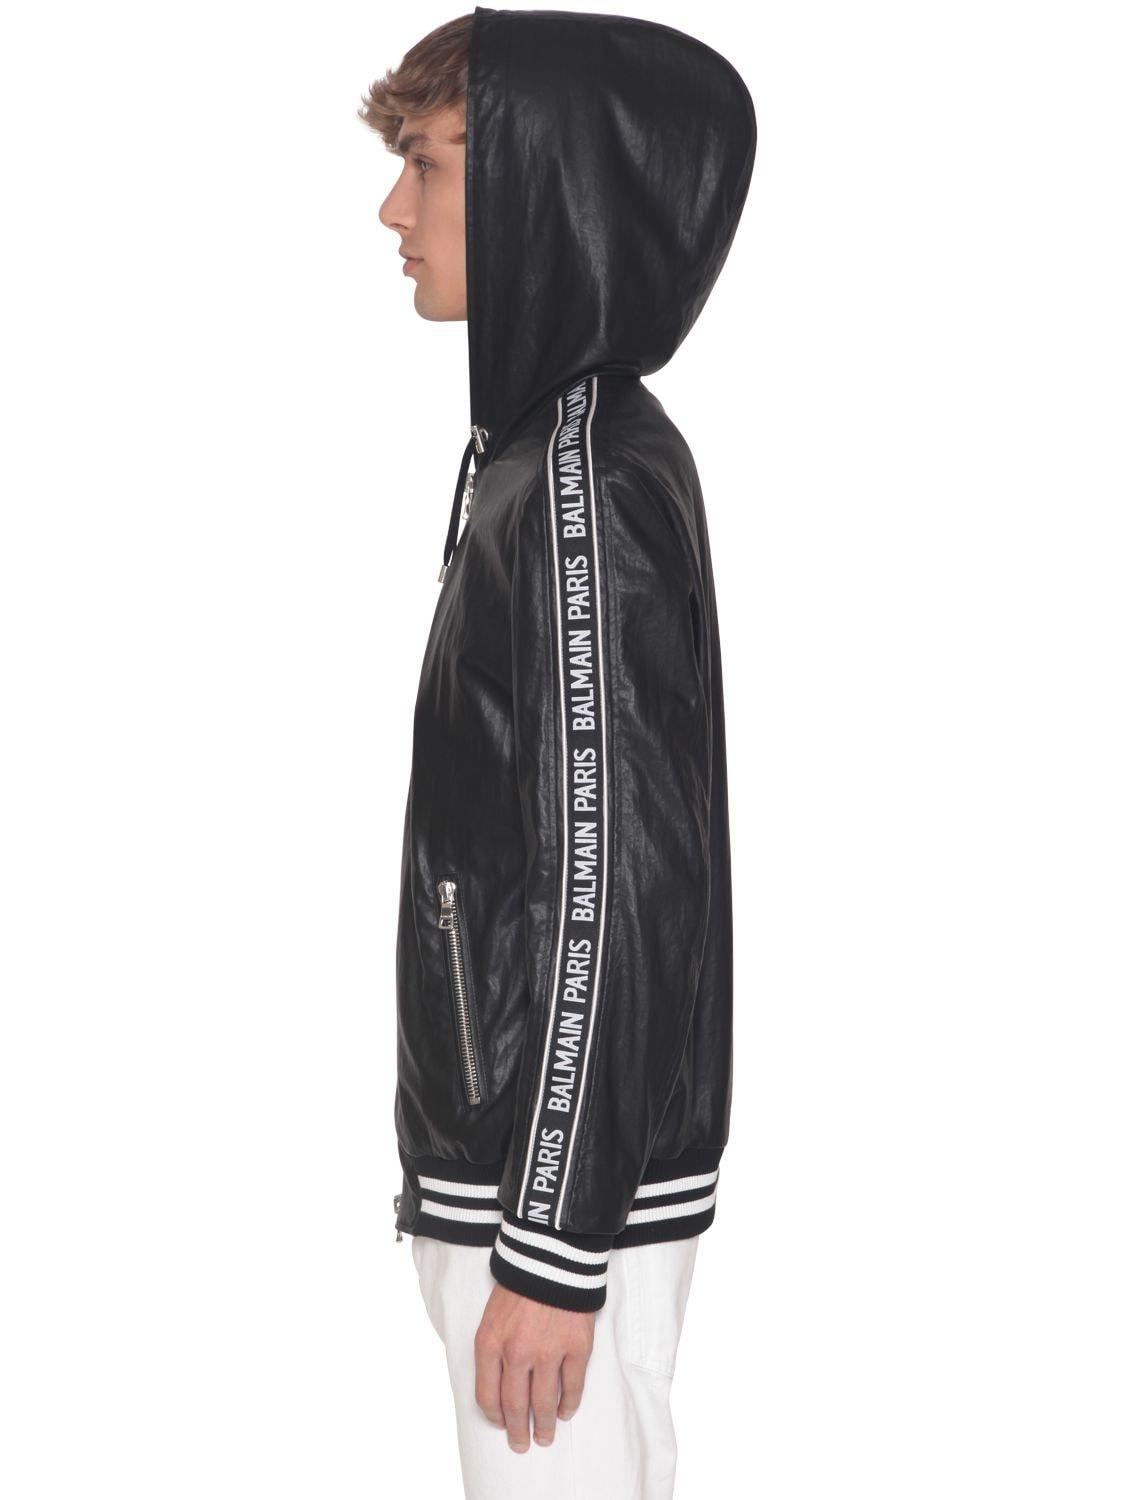 Veste En Nylon Enduit Avec Bandes Logo Cuir Balmain pour homme en coloris  Noir - 64 % de réduction - Lyst